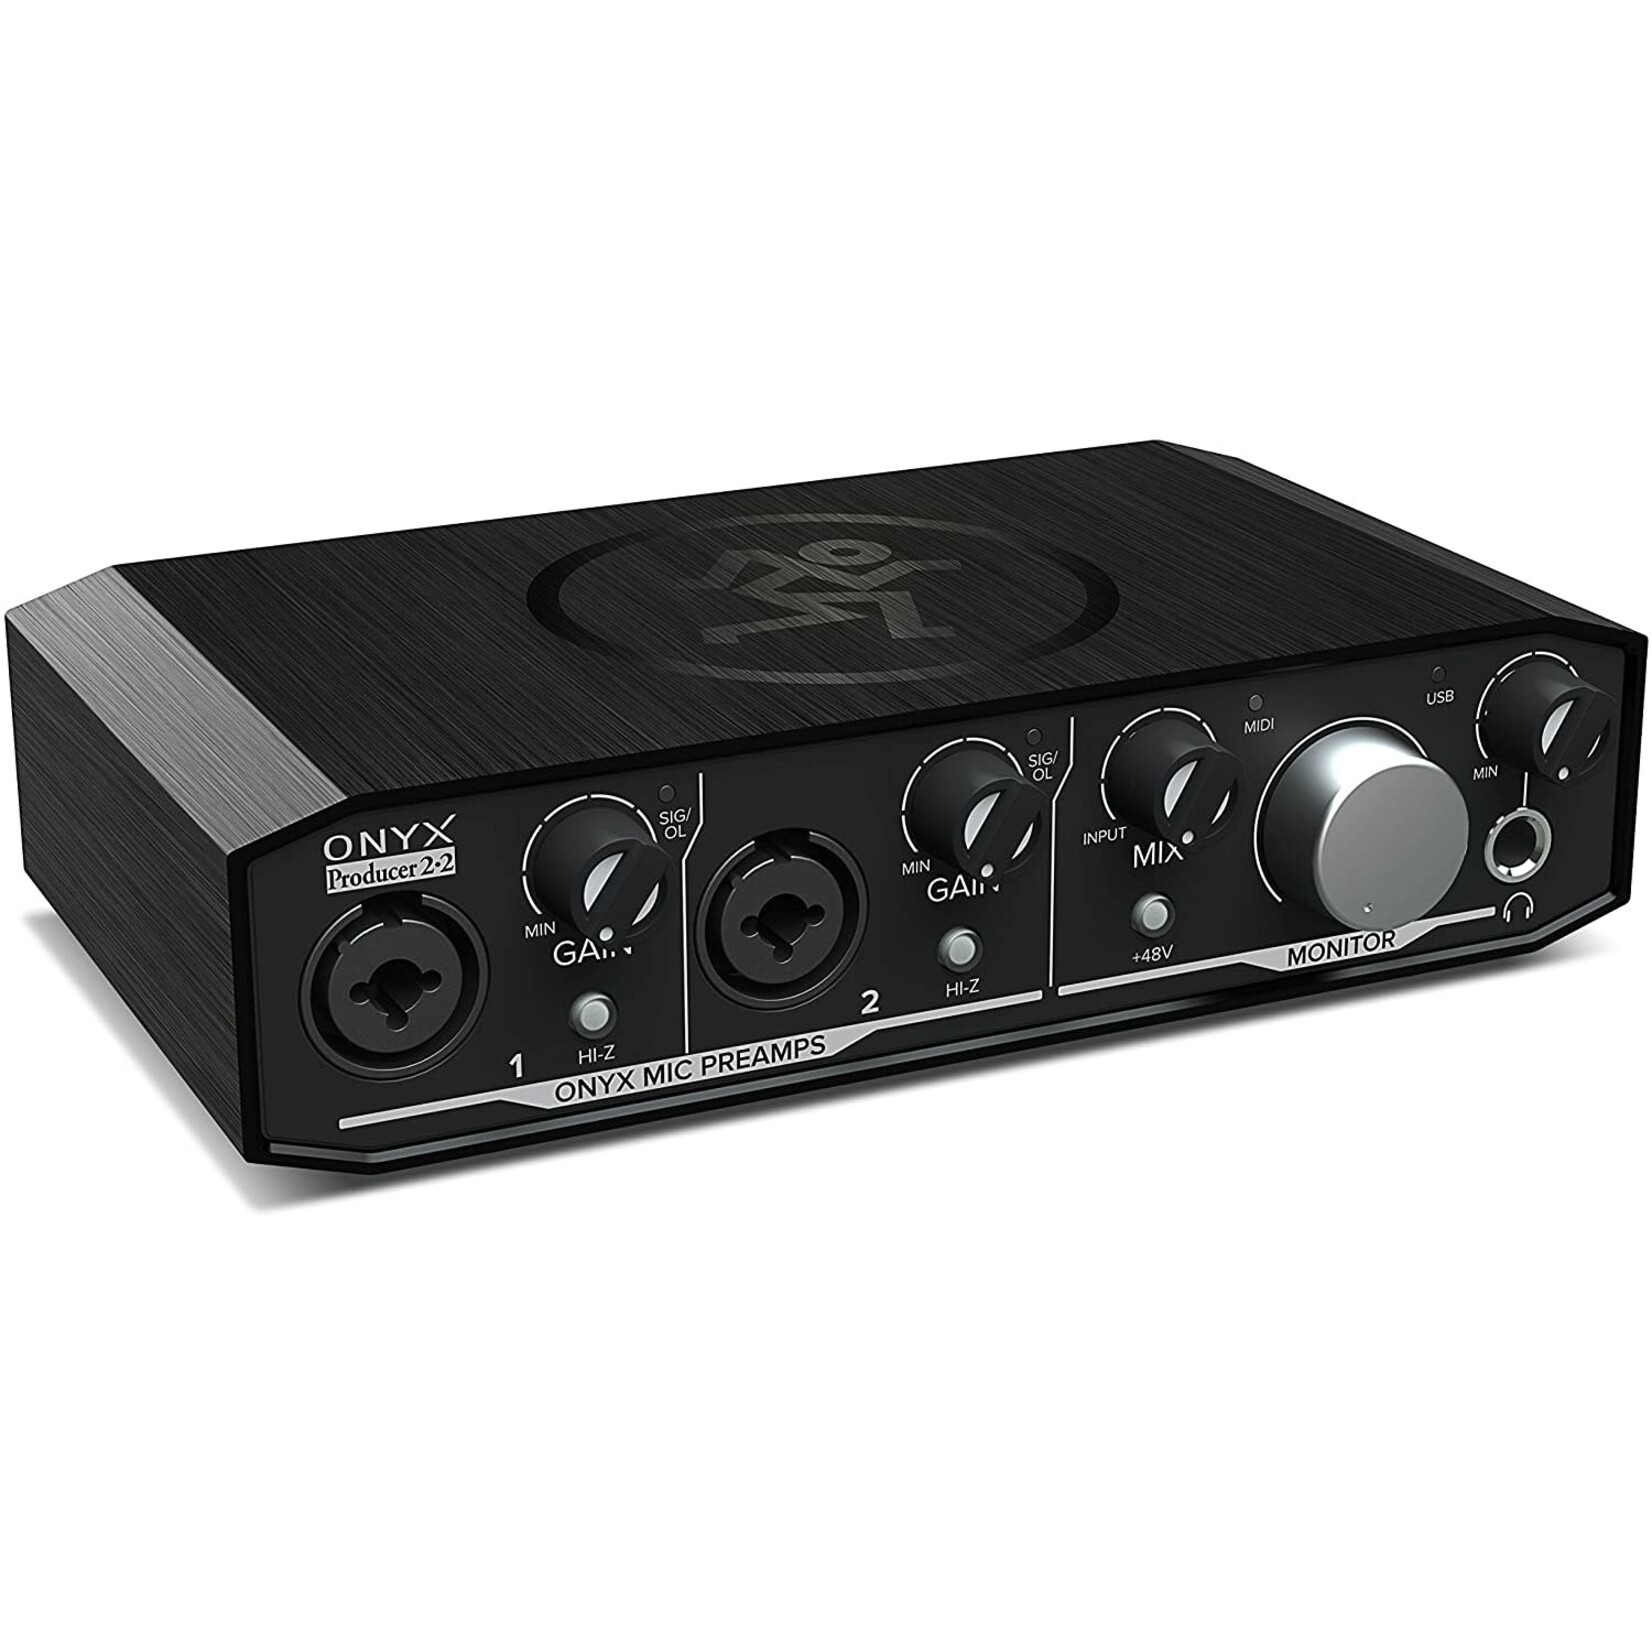 Mackie Mackie Onyx Producer 2-2 USB Audio Interface with Midi